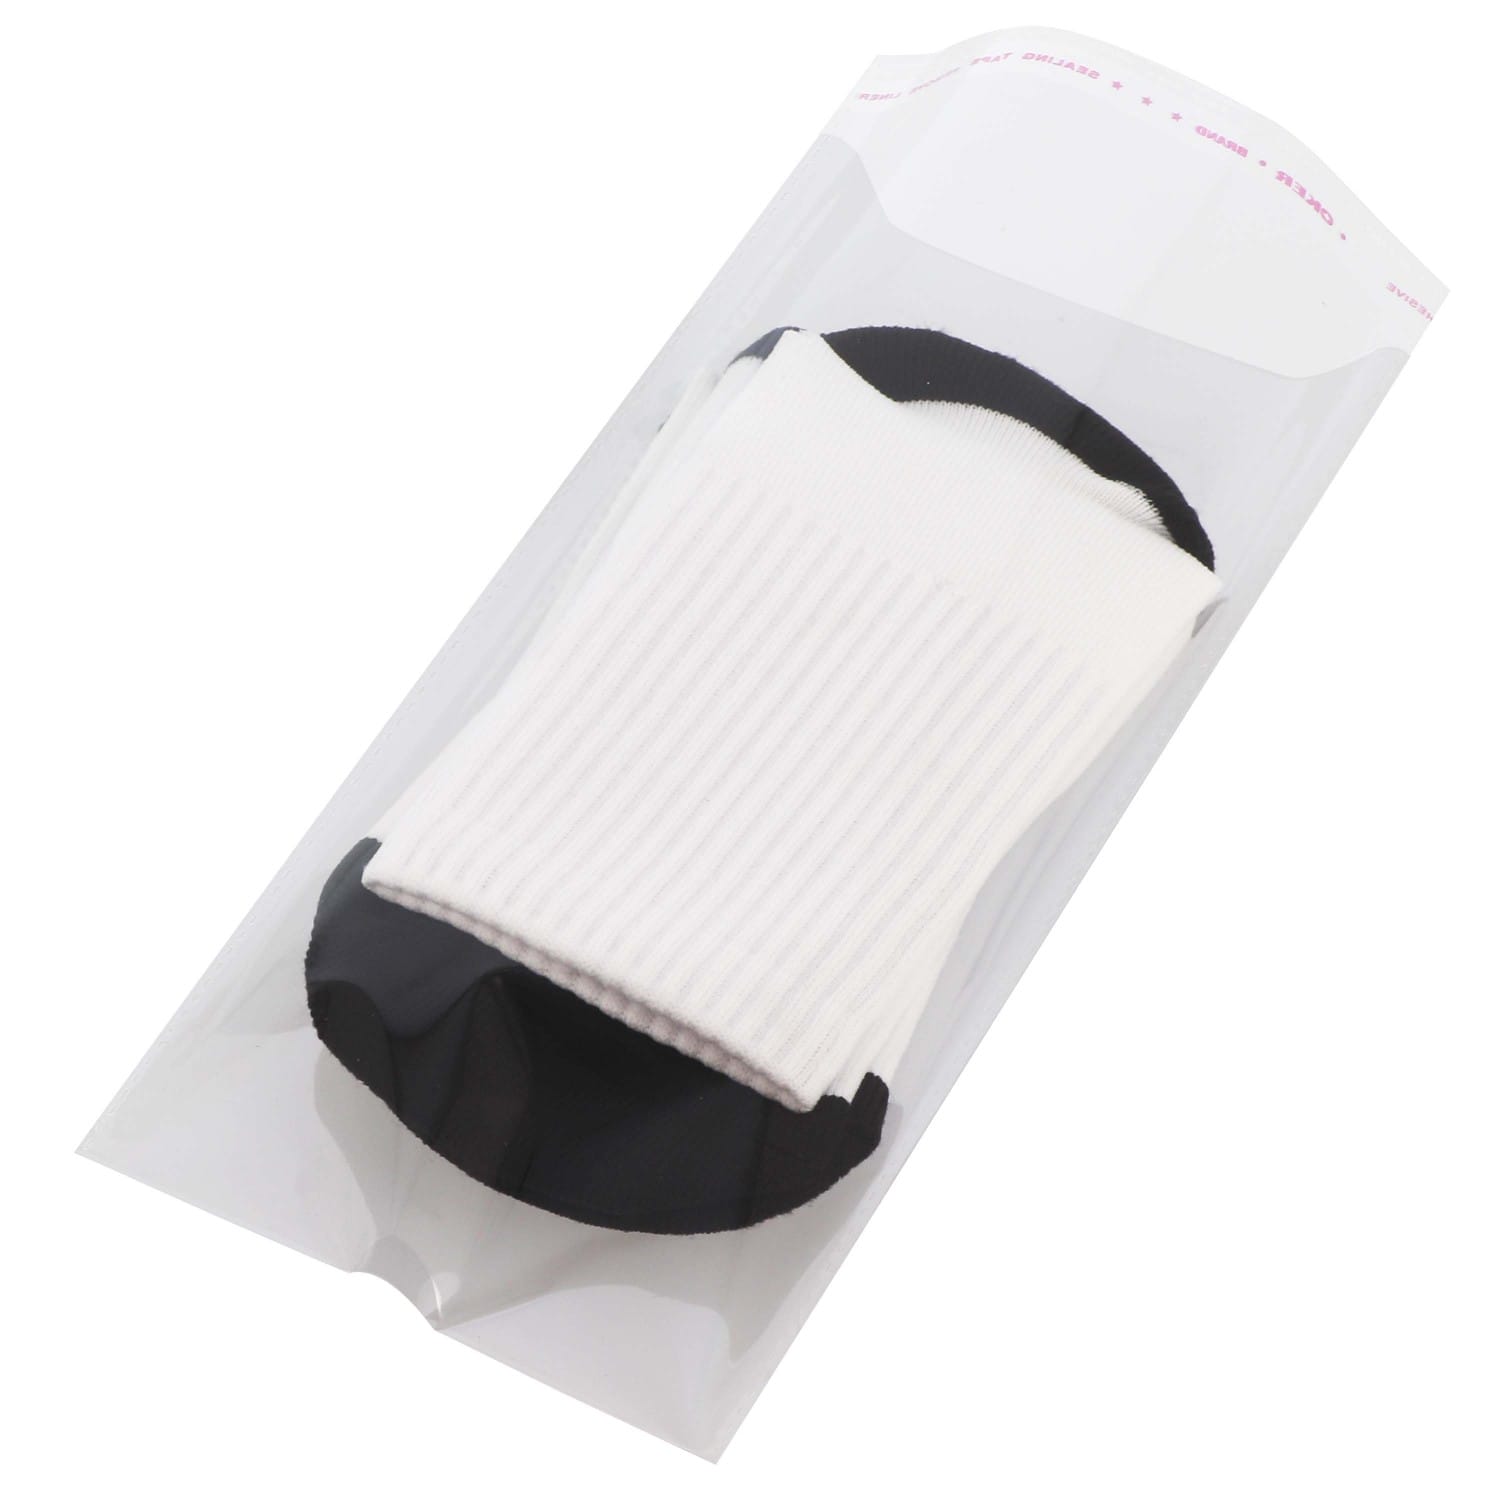 Paire de chaussettes blanches en polyester - Taille 39/42